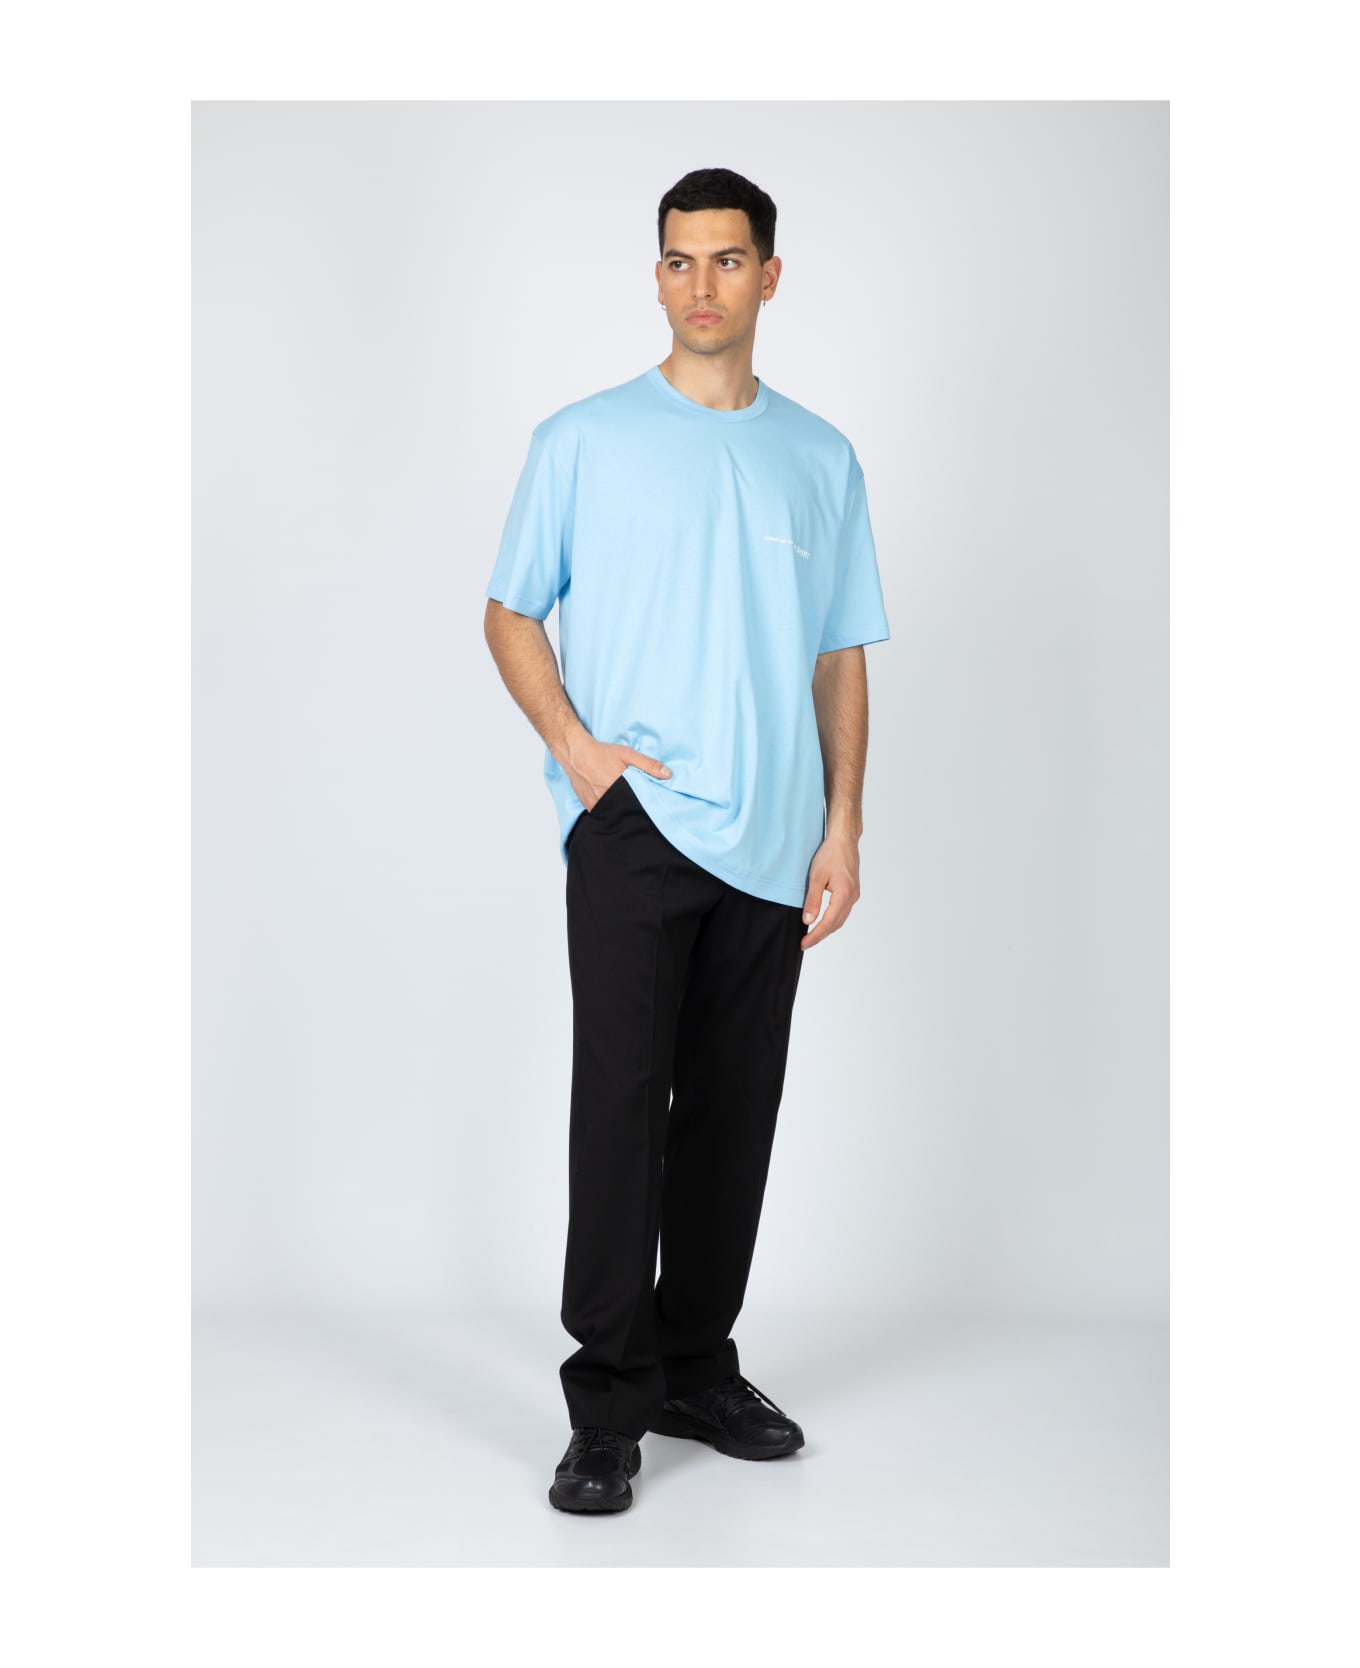 Comme des Garçons Shirt Mens T-shirt Knit Sky blue cotton oversize t-shirt with chest logo - Celeste